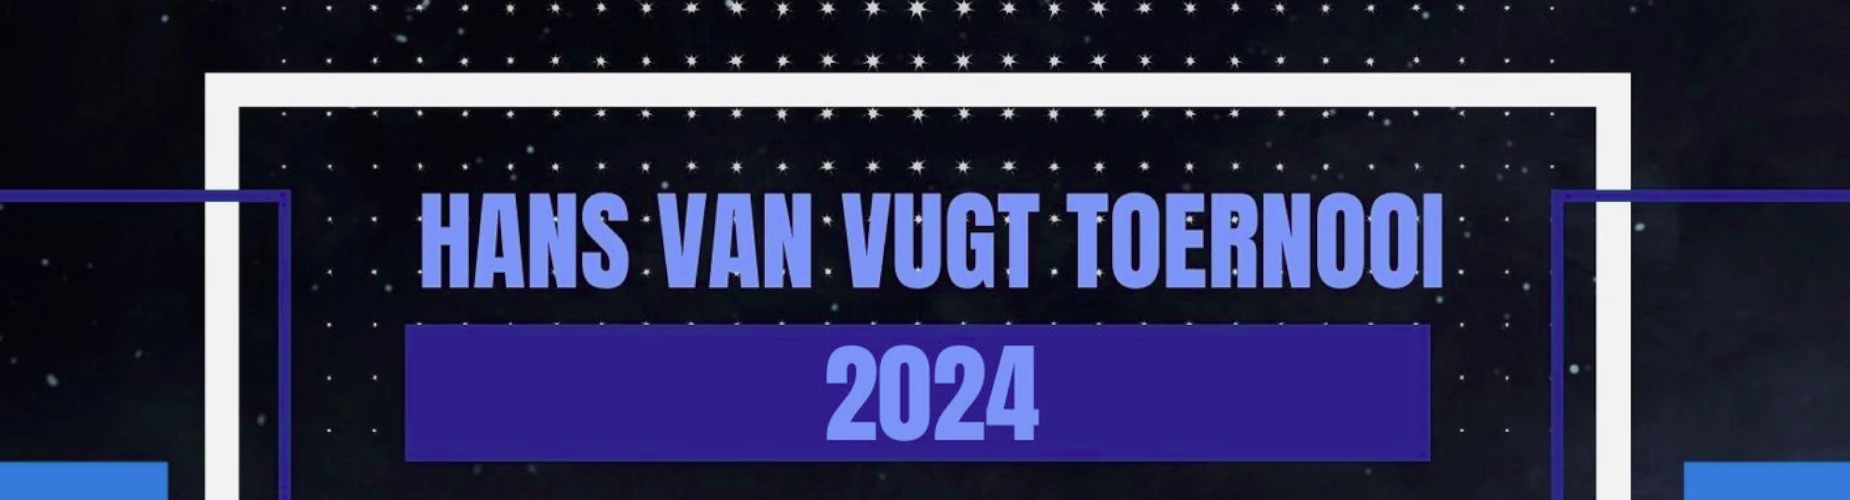 Banner - Hans van Vugt toernooi 2024 - FC Driebergen - Driebergen-Rijsenburg